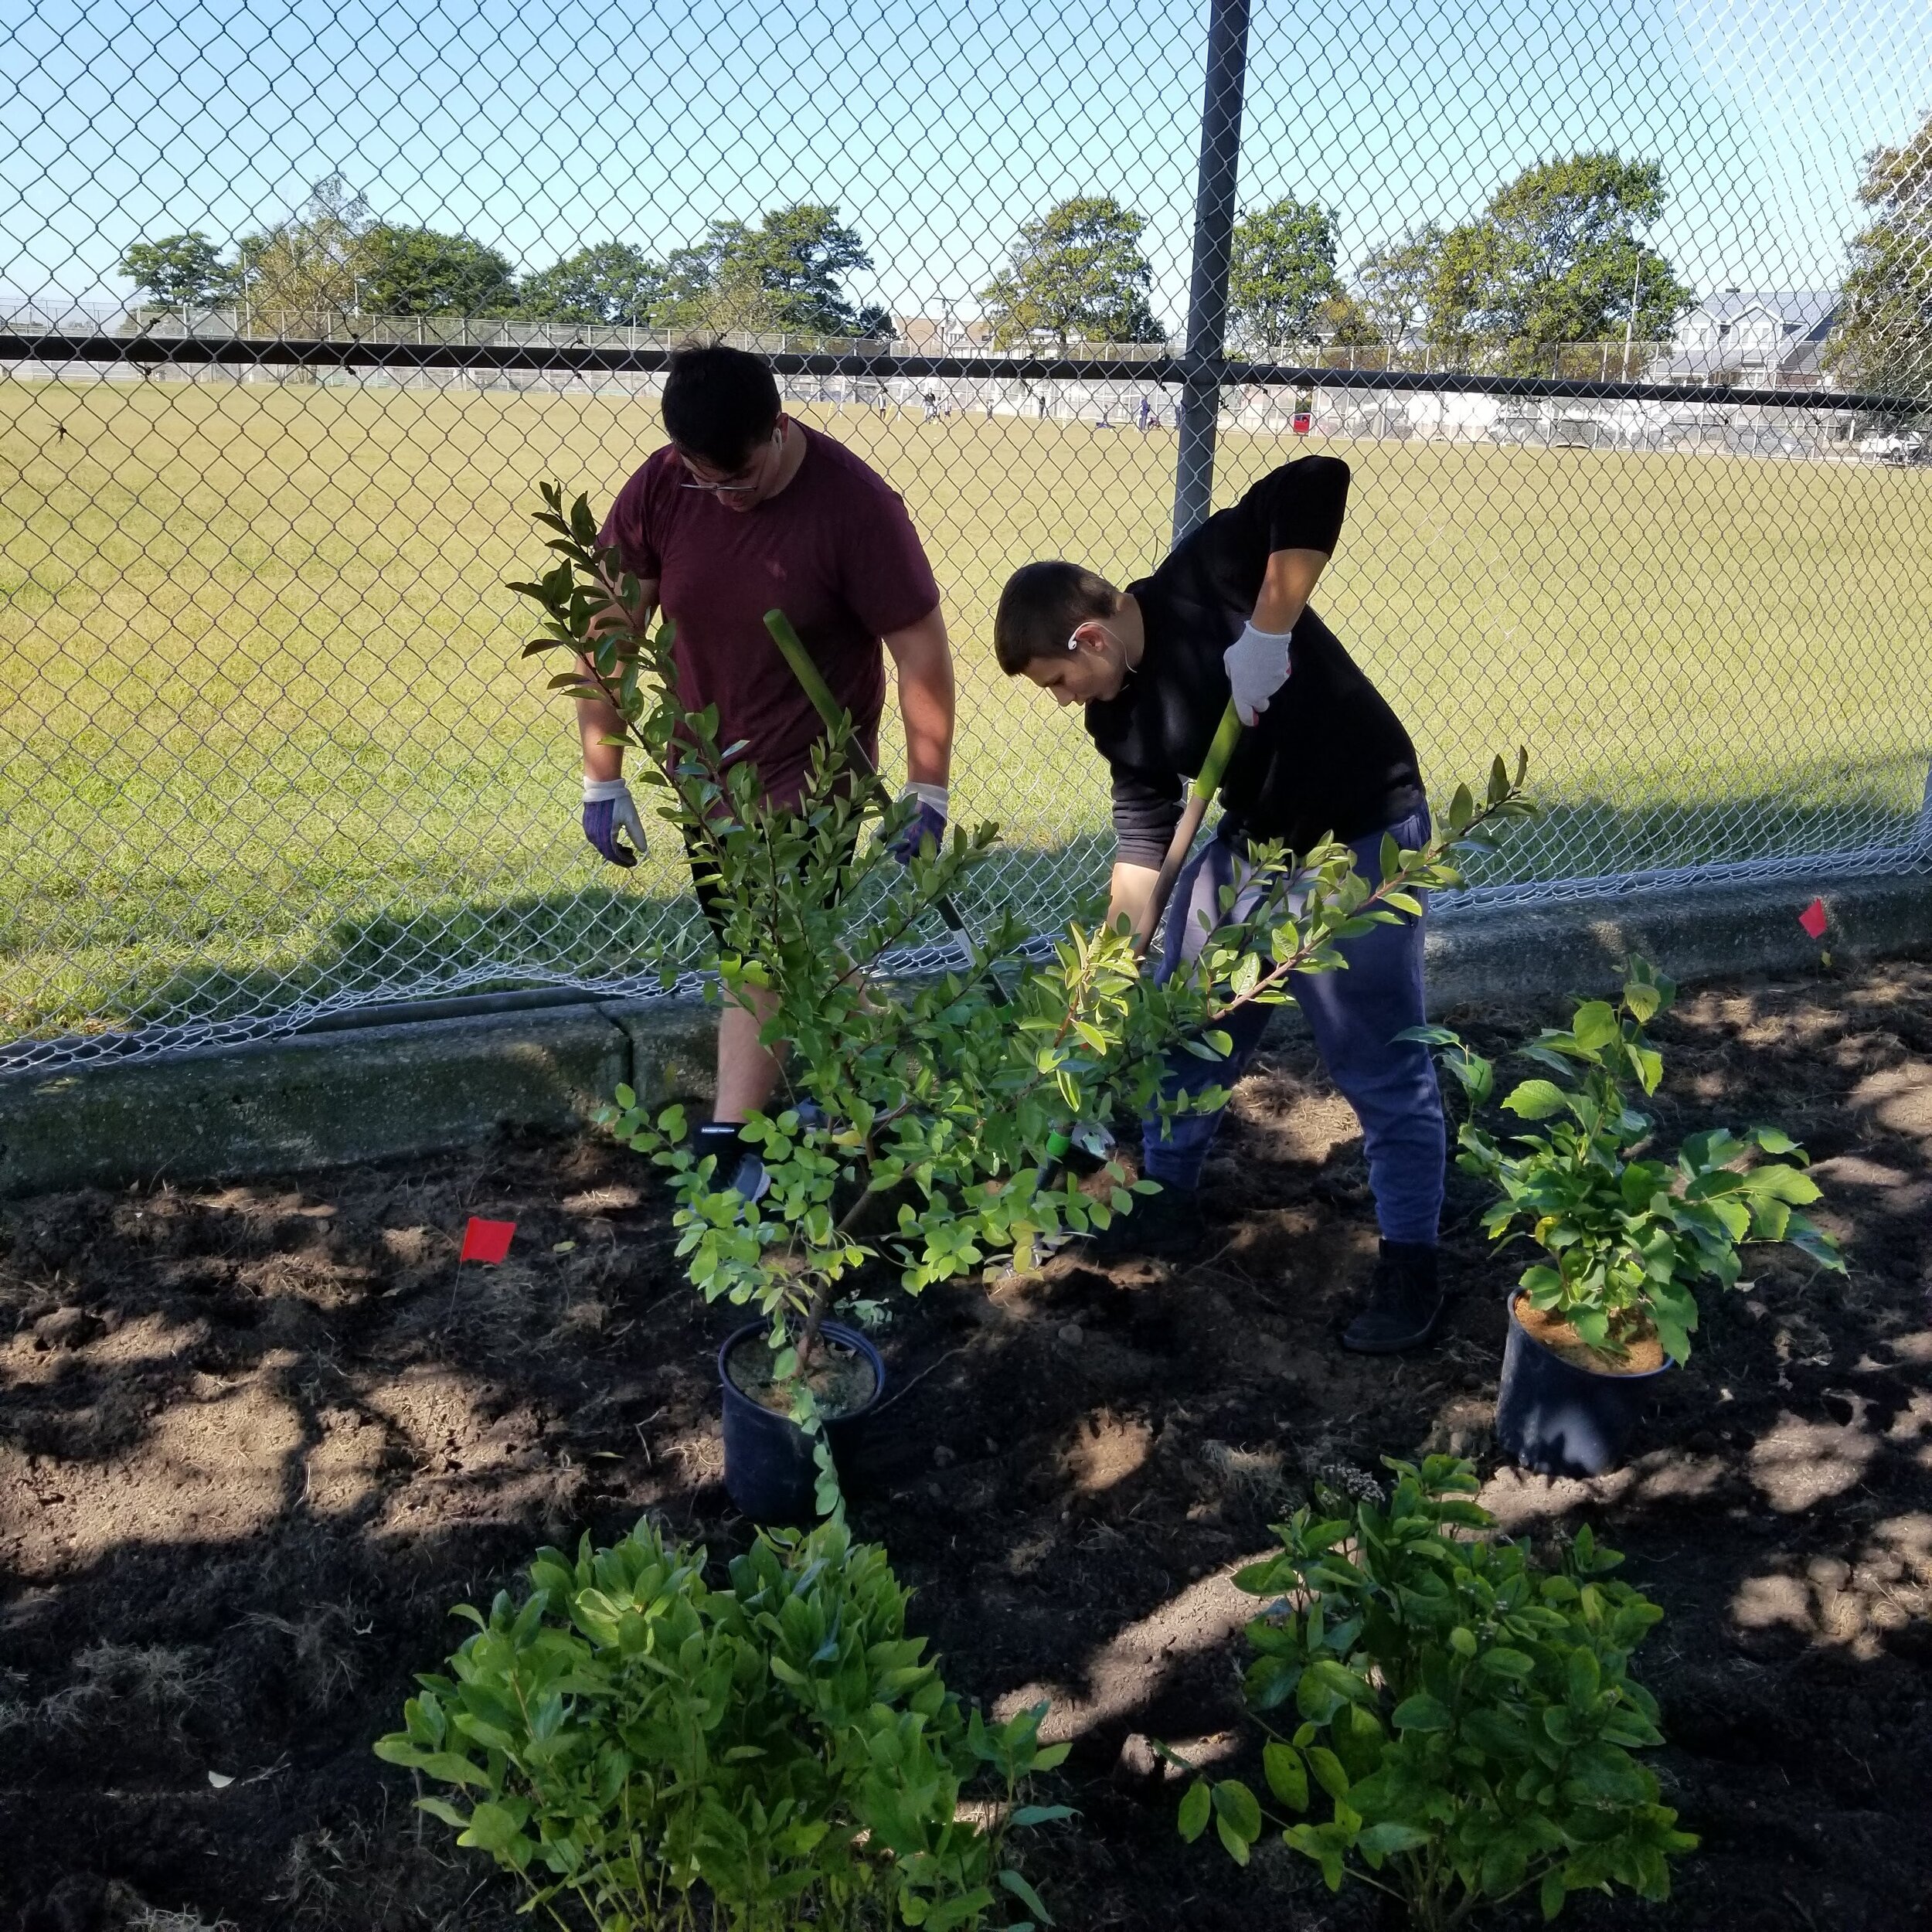 Volunteers help plant shrubs